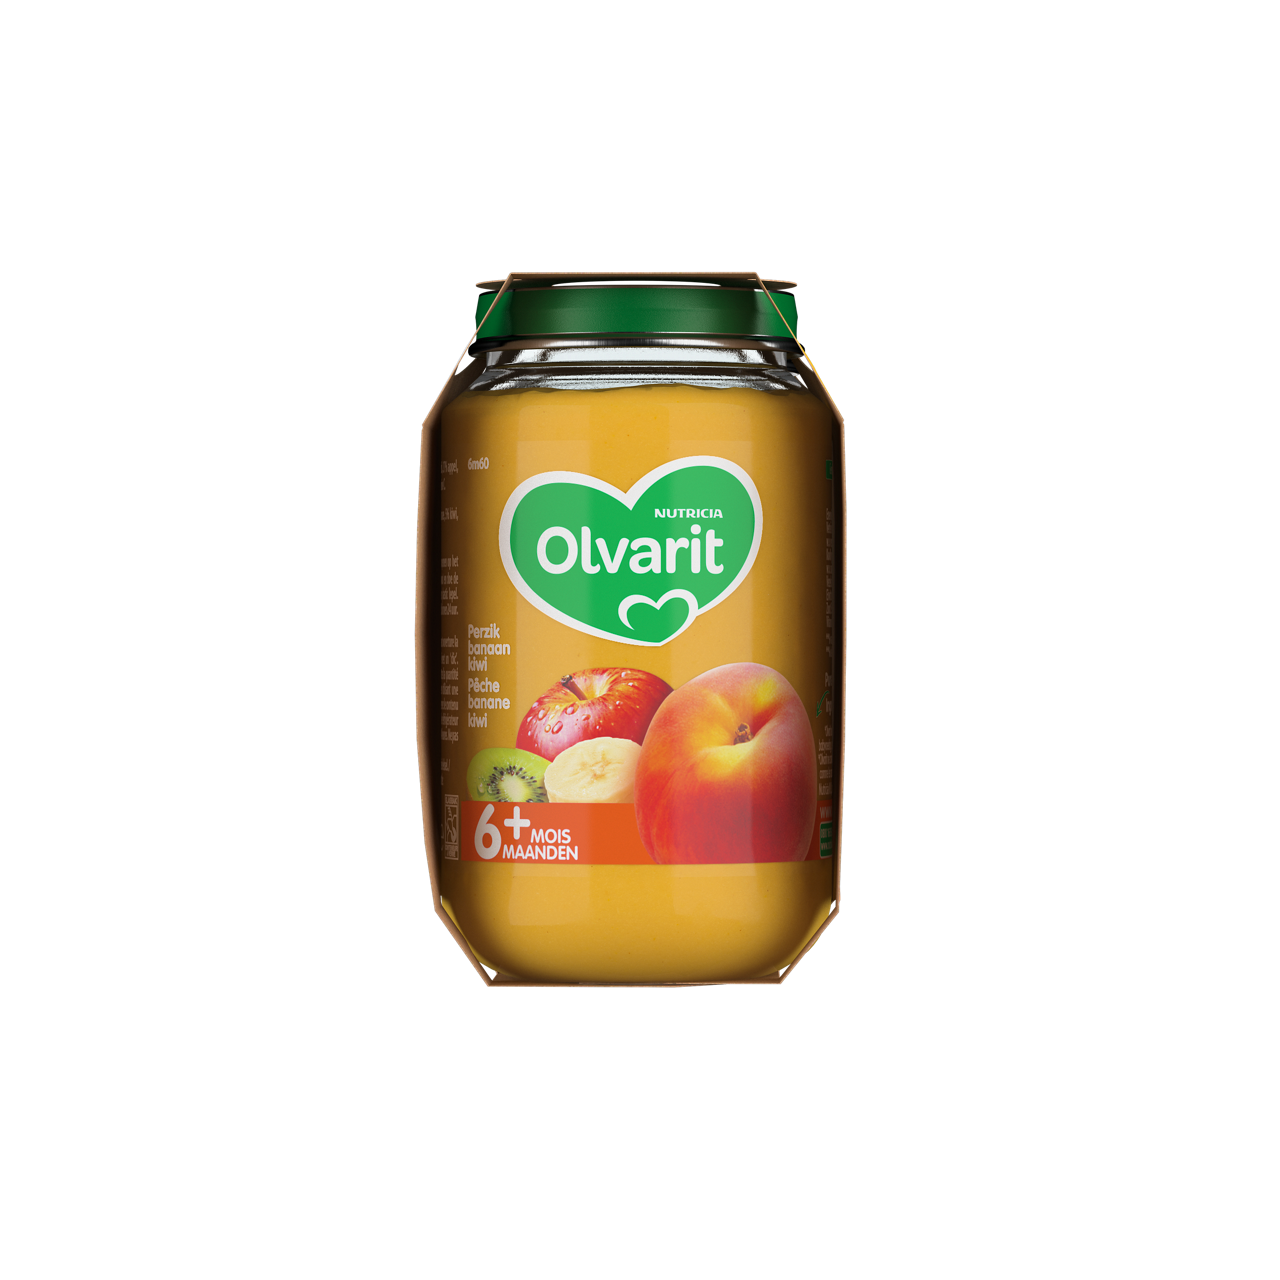 Olvarit Fruits Pêche Pomme Kiwi. Consultez notre site web Olvarit.be pour plus d'info sur alimentation pour bébé et les produits Olvarit.